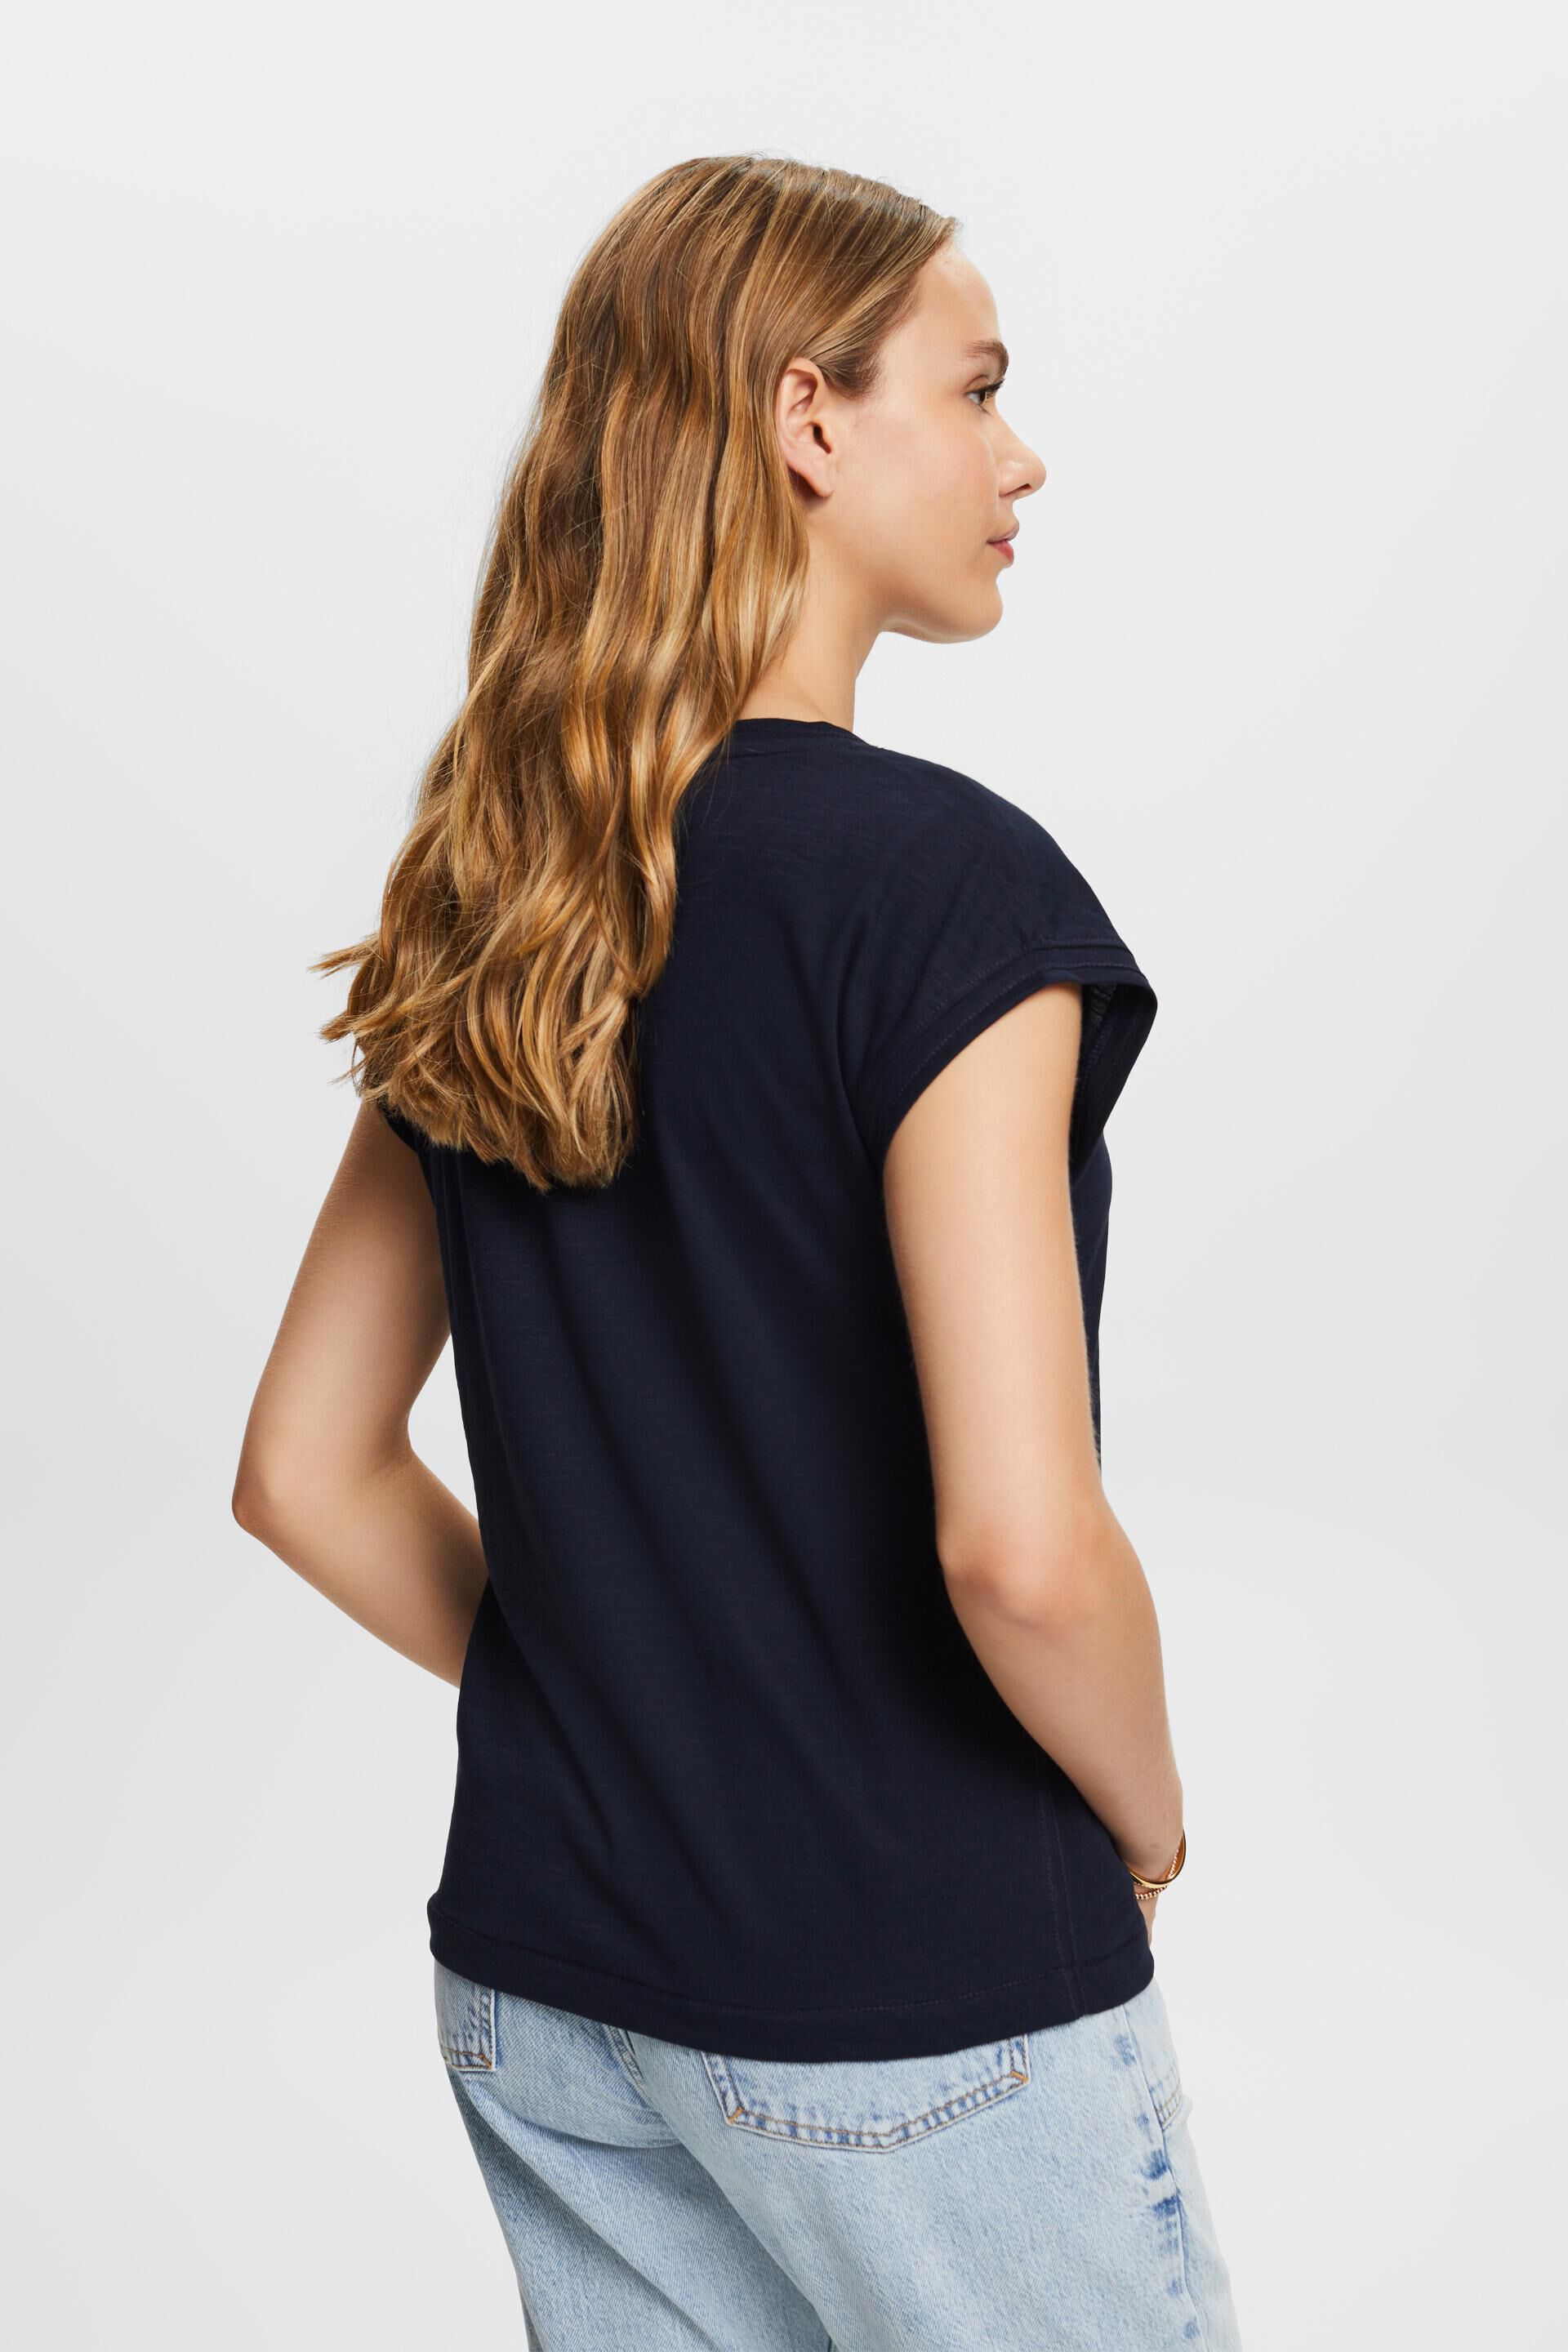 Esprit Damen T-Shirt mit Aufdruck, % 100 Baumwolle